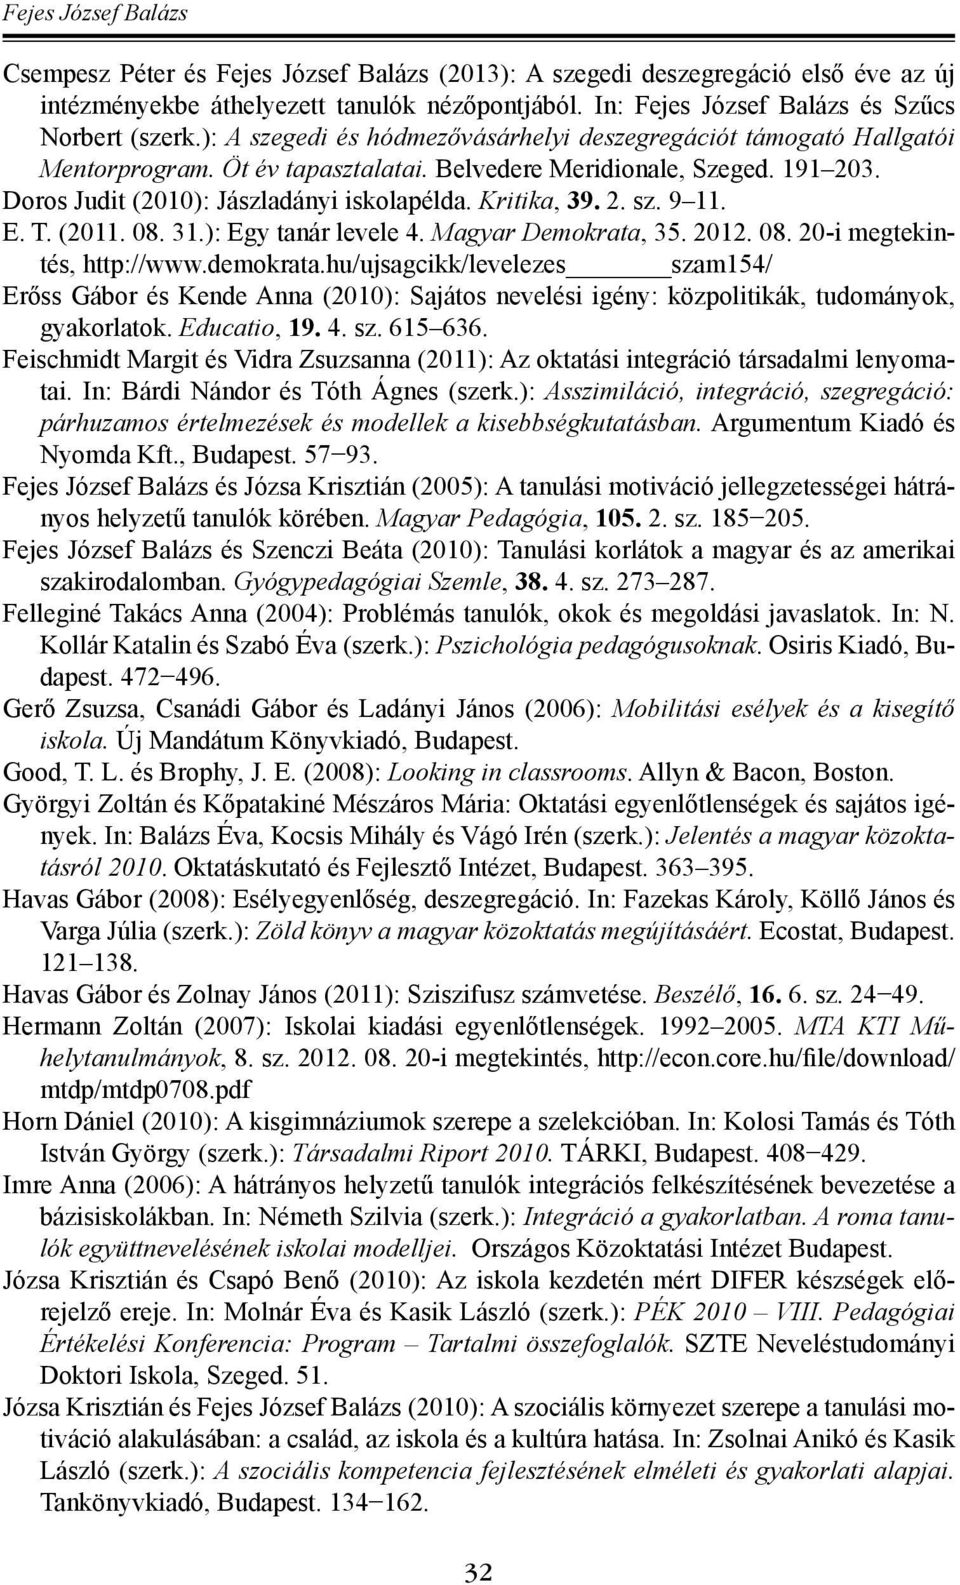 Kritika, 39. 2. sz. 9 11. E. T. (2011. 08. 31.): Egy tanár levele 4. Magyar Demokrata, 35. 2012. 08. 20-i megtekintés, http://www.demokrata.